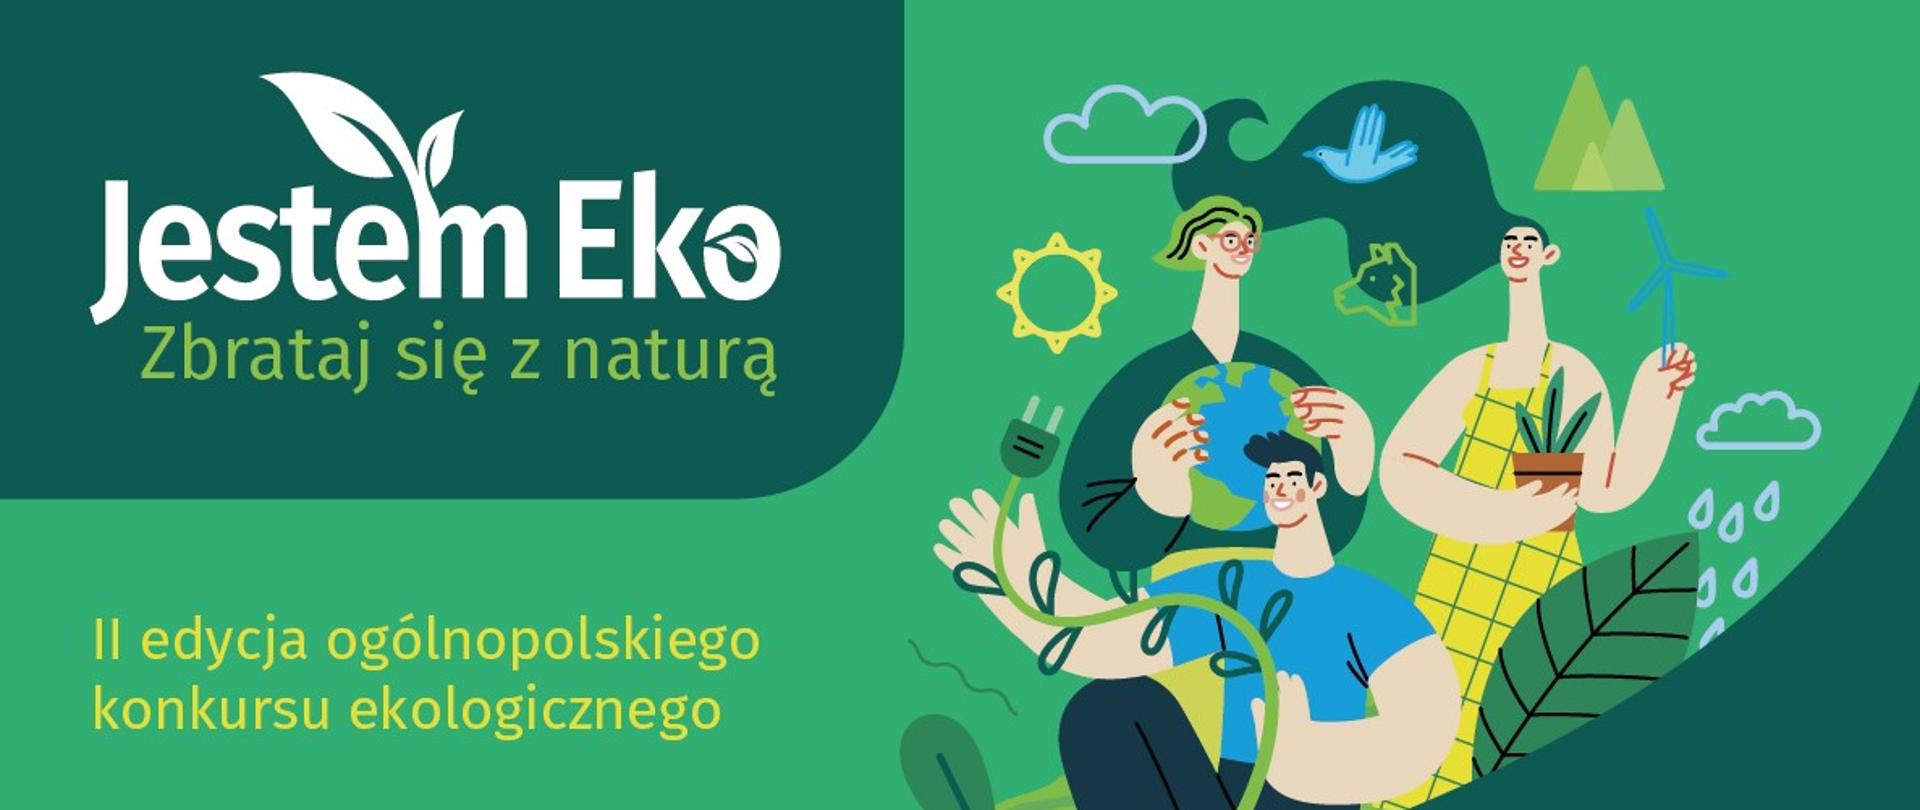 Plakat informacyjno-promocyjny akcji "Jestem Eko" II edycji ogólnopolskiego konkursu ekologicznego